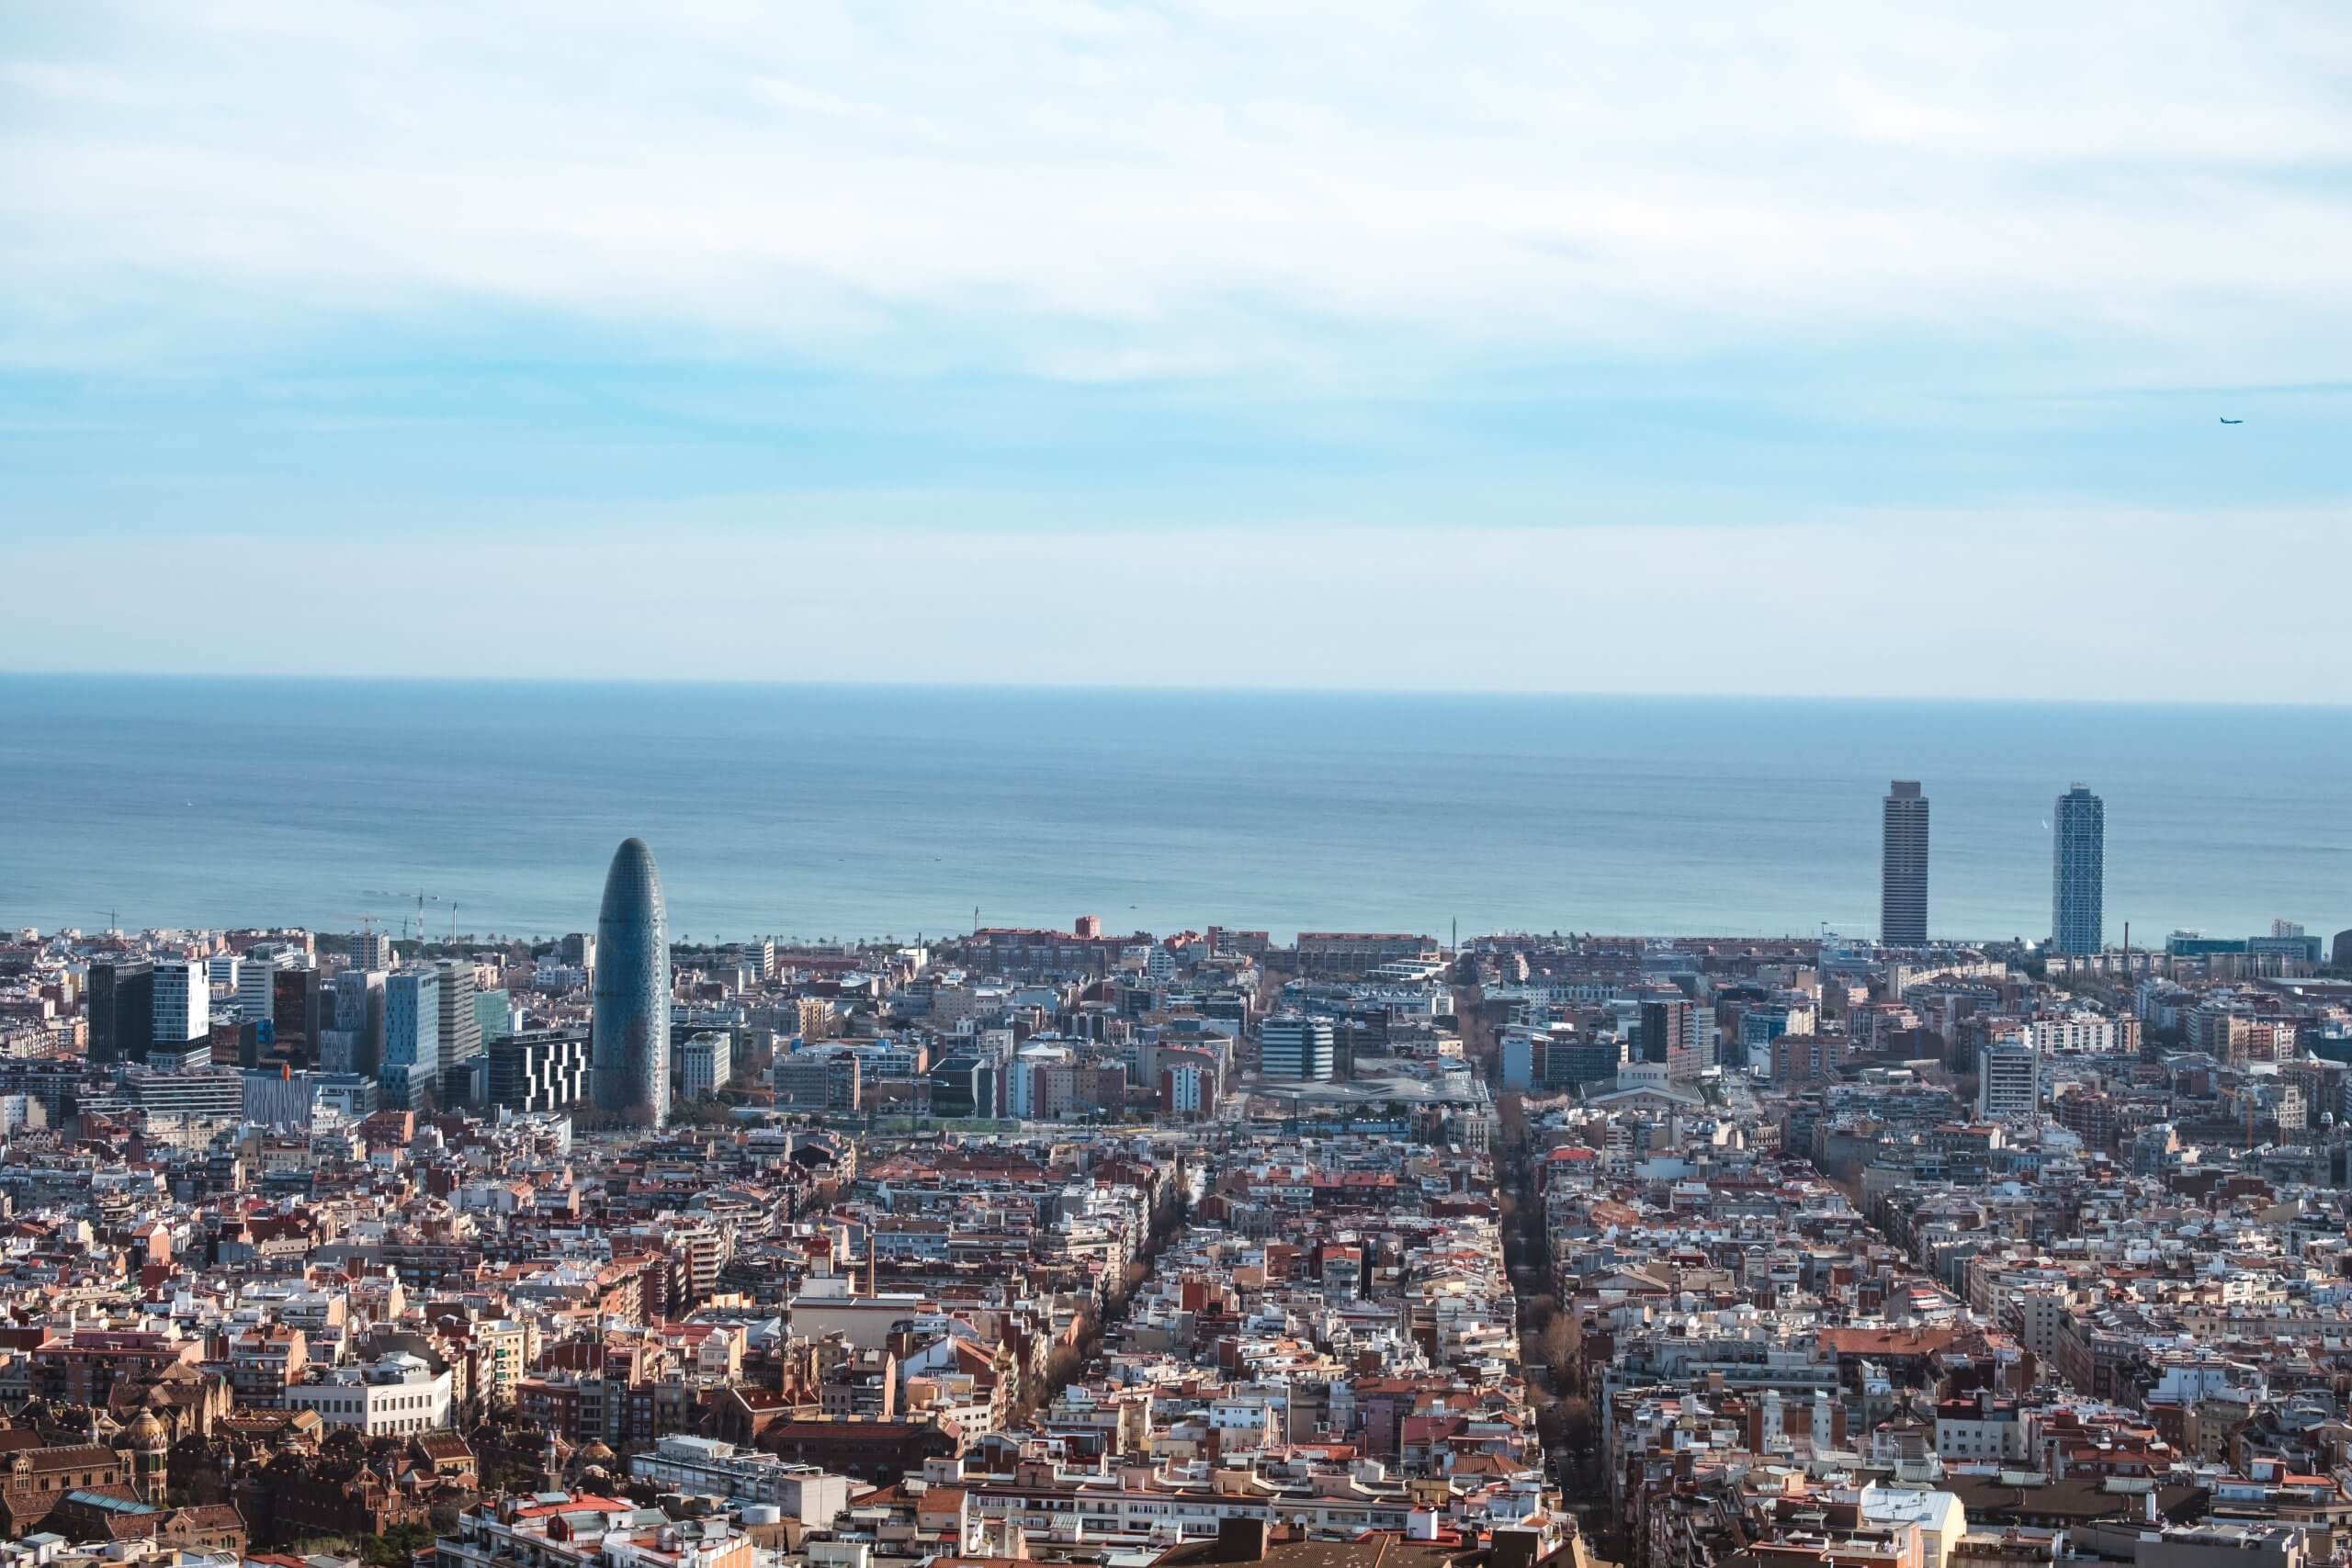 Inversiones inmobiliarias en Barcelona: Cómo identificar las mejores oportunidades de compra